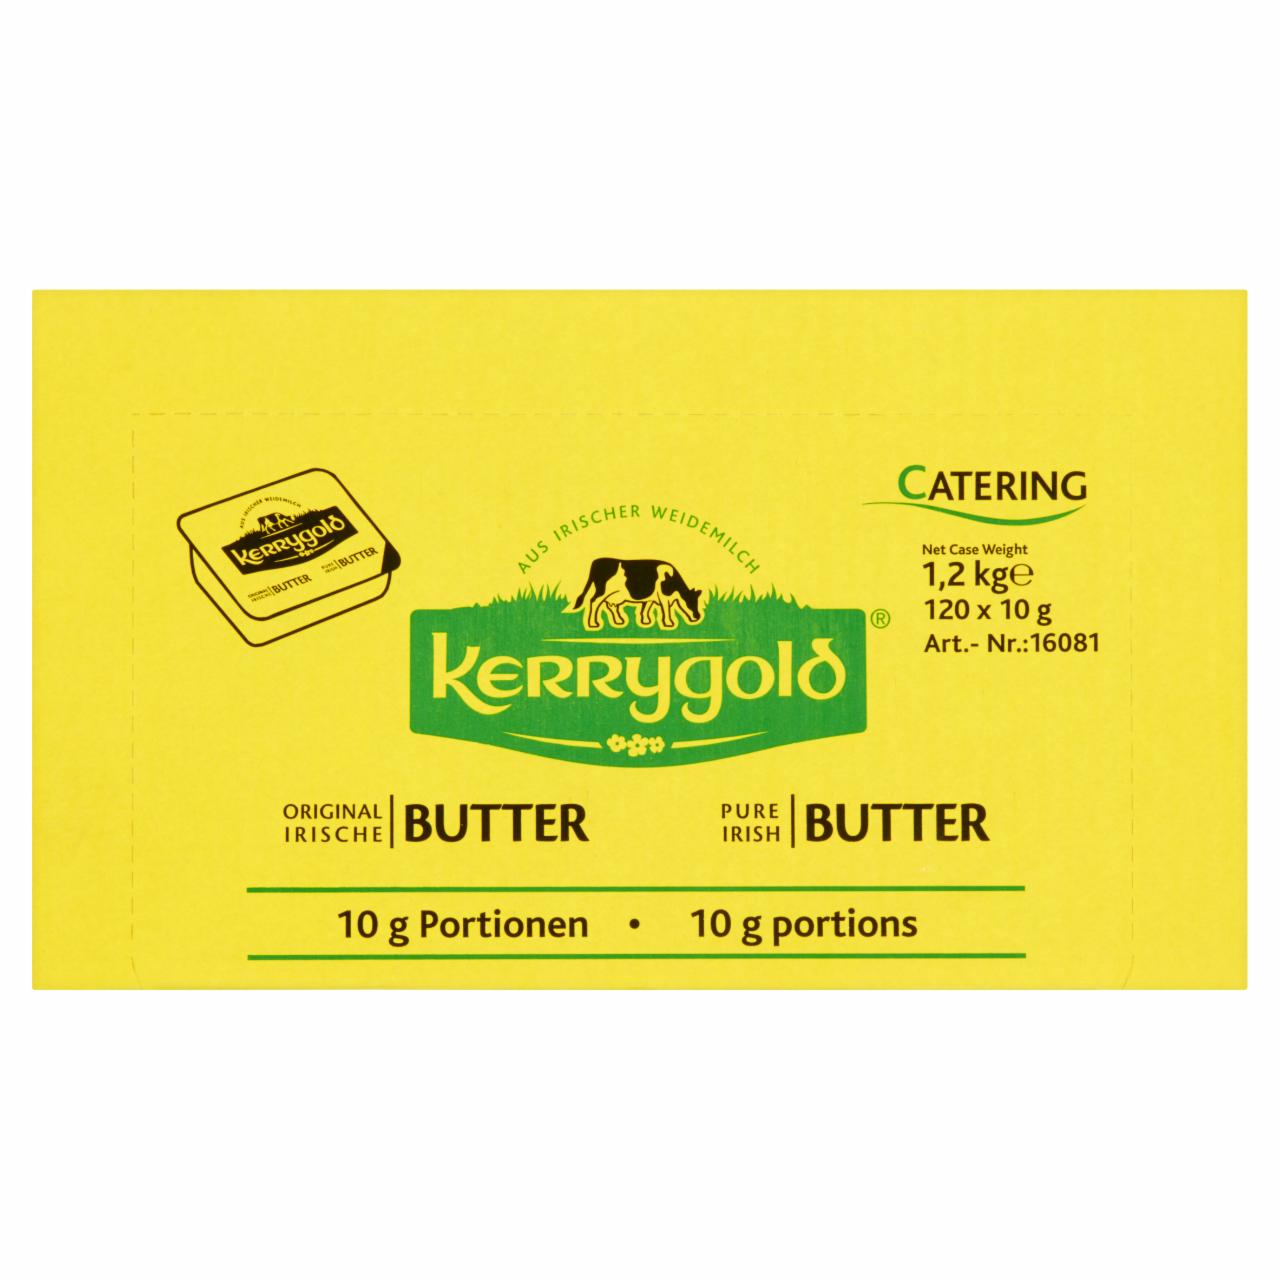 Zdjęcia - Kerrygold Oryginalne masło irlandzkie 1,2 kg (120 x 10 g)